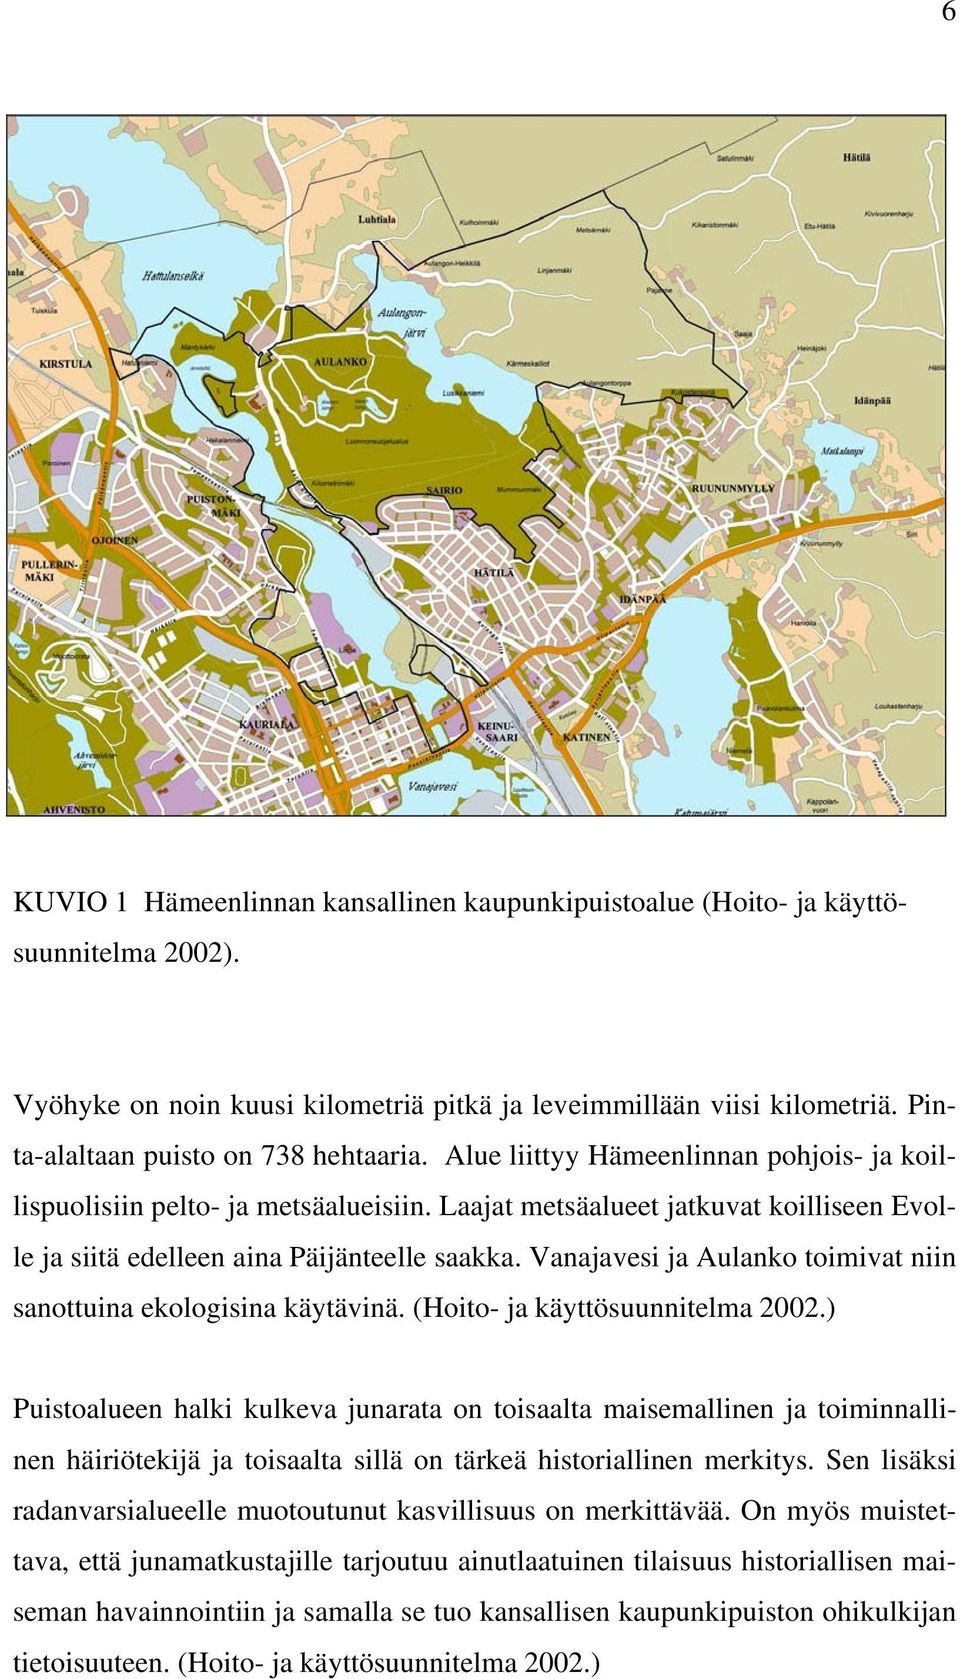 Laajat metsäalueet jatkuvat koilliseen Evolle ja siitä edelleen aina Päijänteelle saakka. Vanajavesi ja Aulanko toimivat niin sanottuina ekologisina käytävinä. (Hoito- ja käyttösuunnitelma 2002.